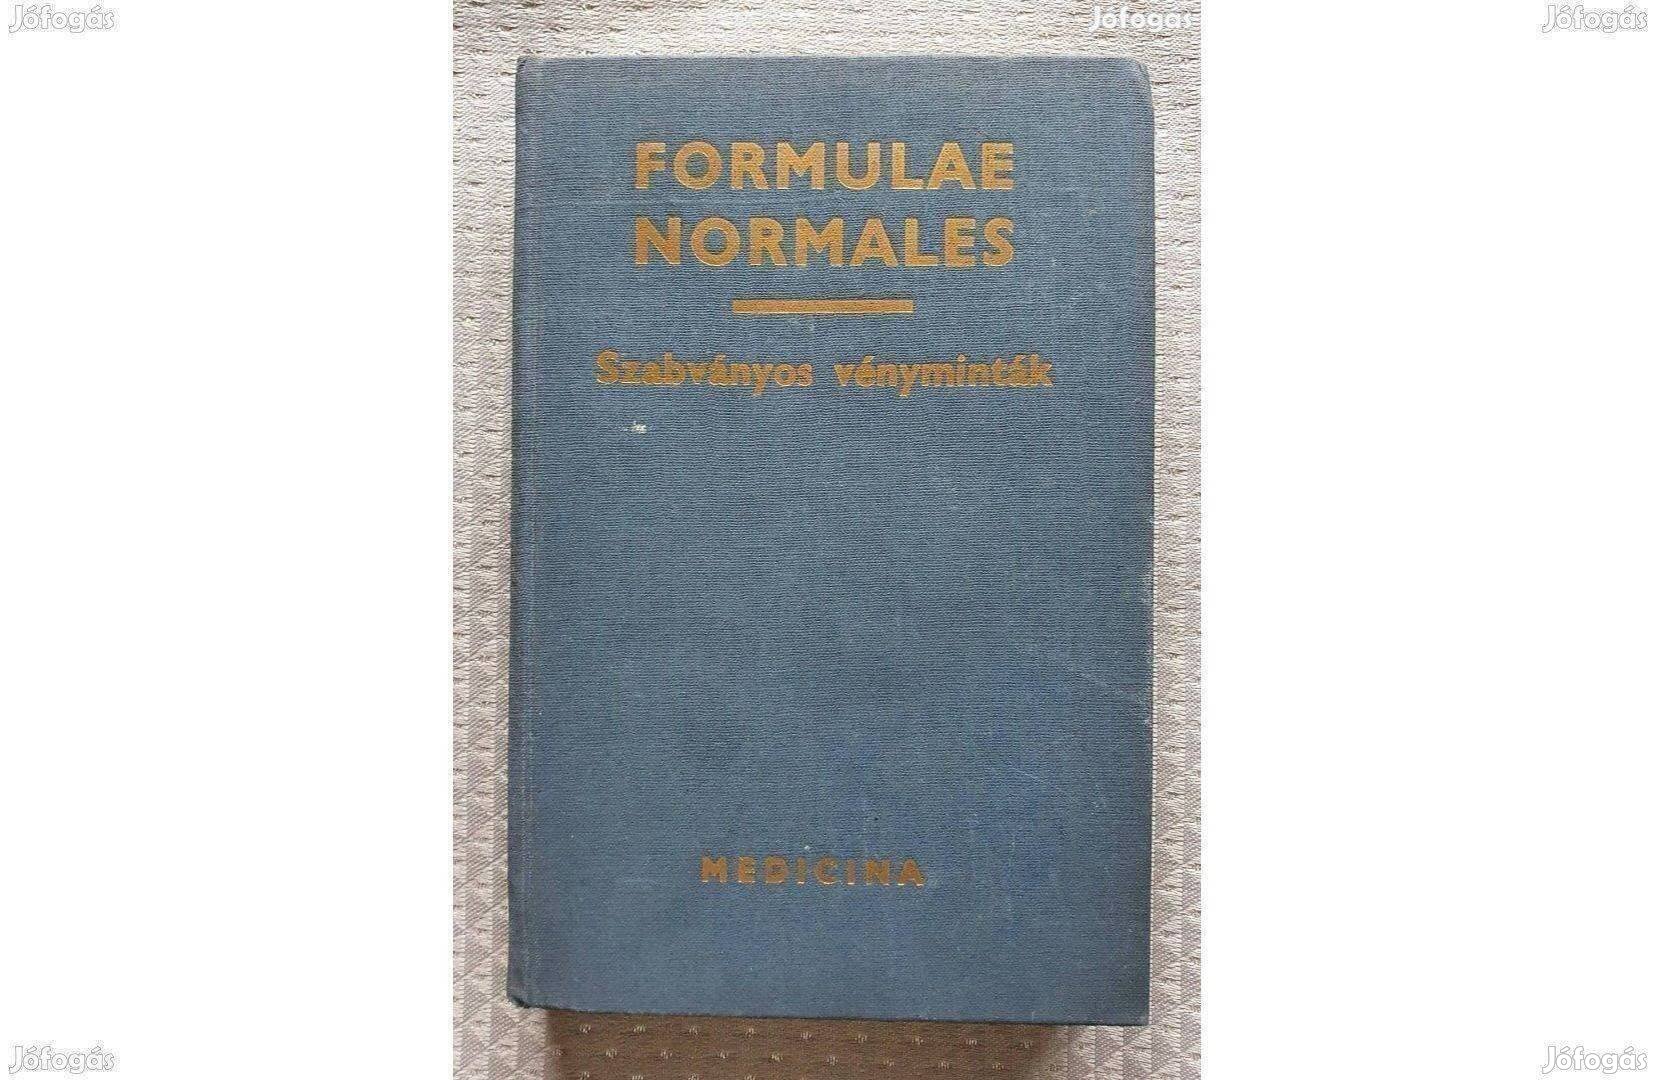 Dr. Szilágyi Géza: Formulae Normales-Szabványos vényminták kézikönyv